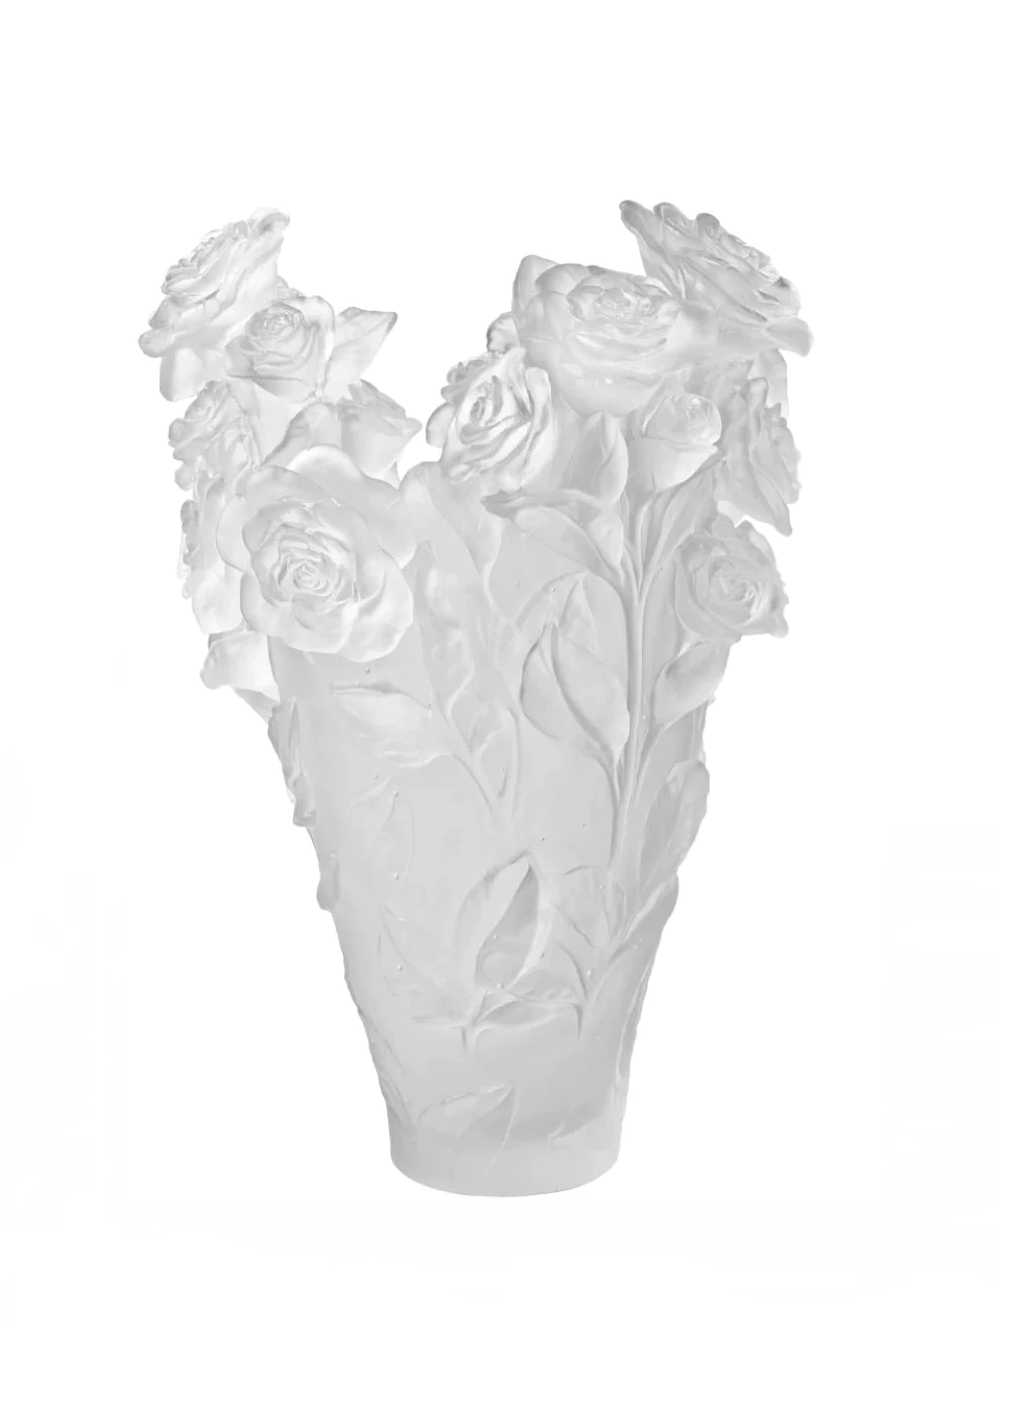 Daum Rose Passion Vase in White, Magnum